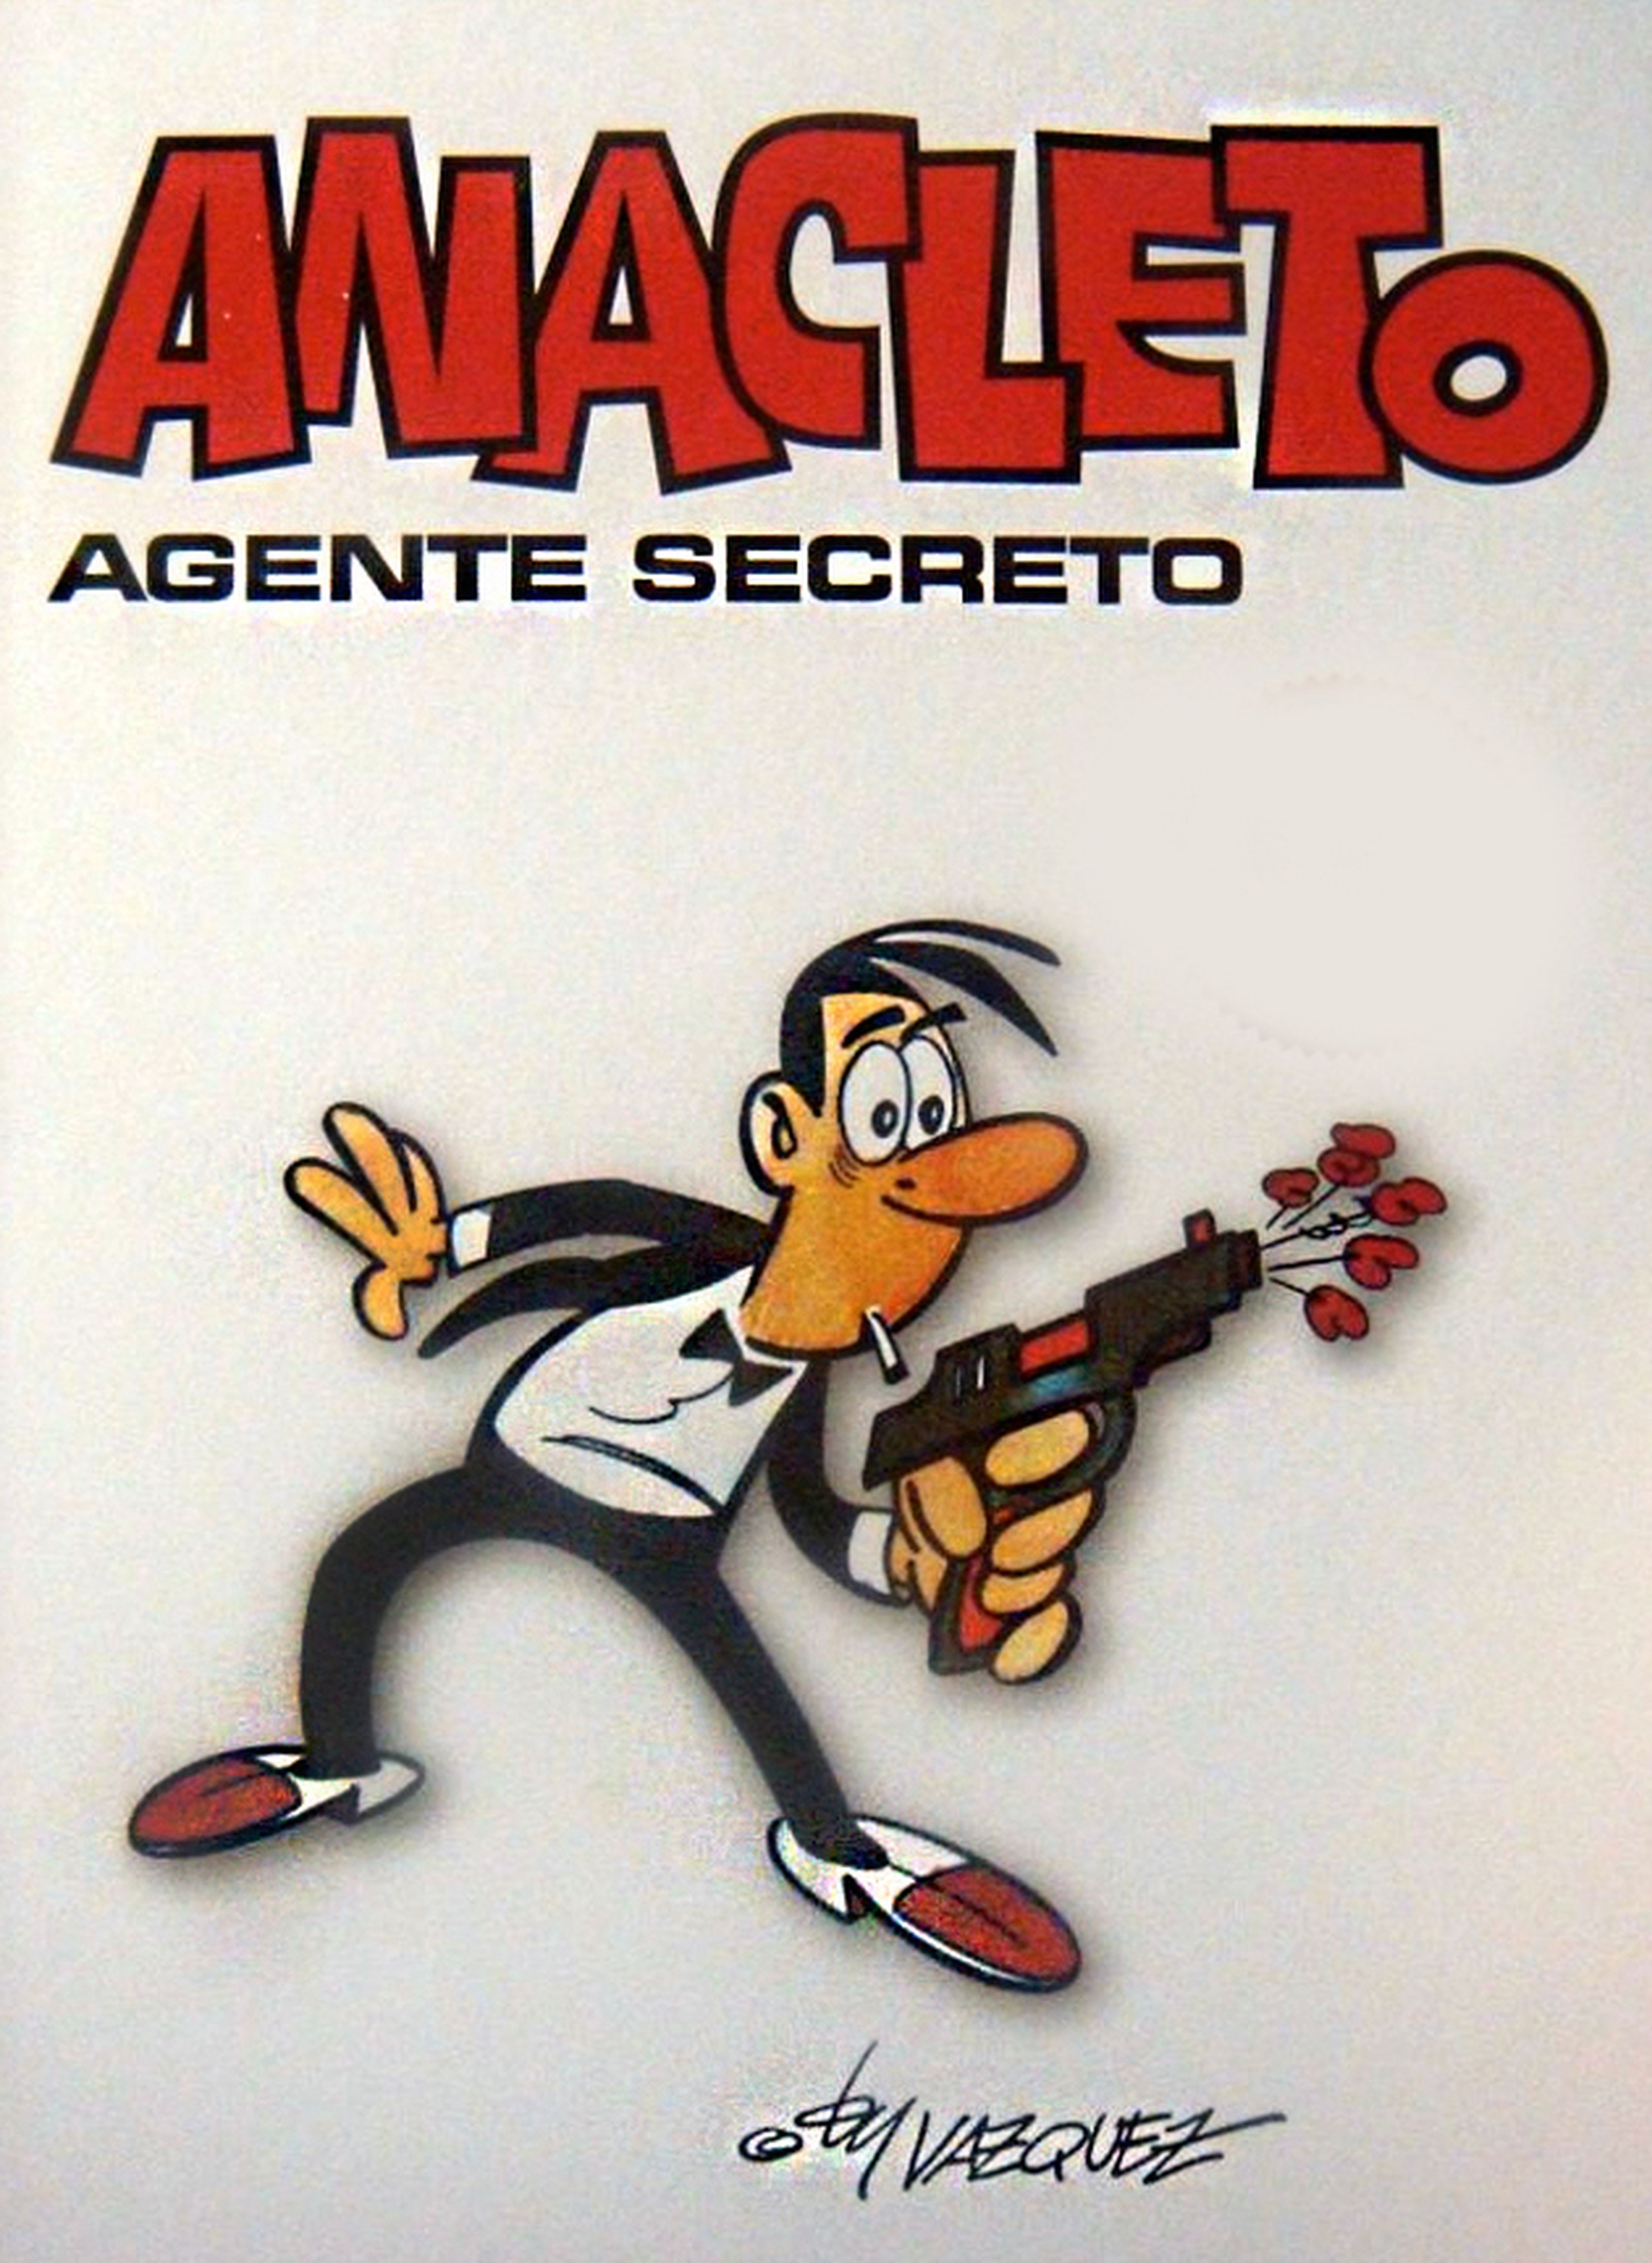 Habrá película de Anacleto, agente secreto